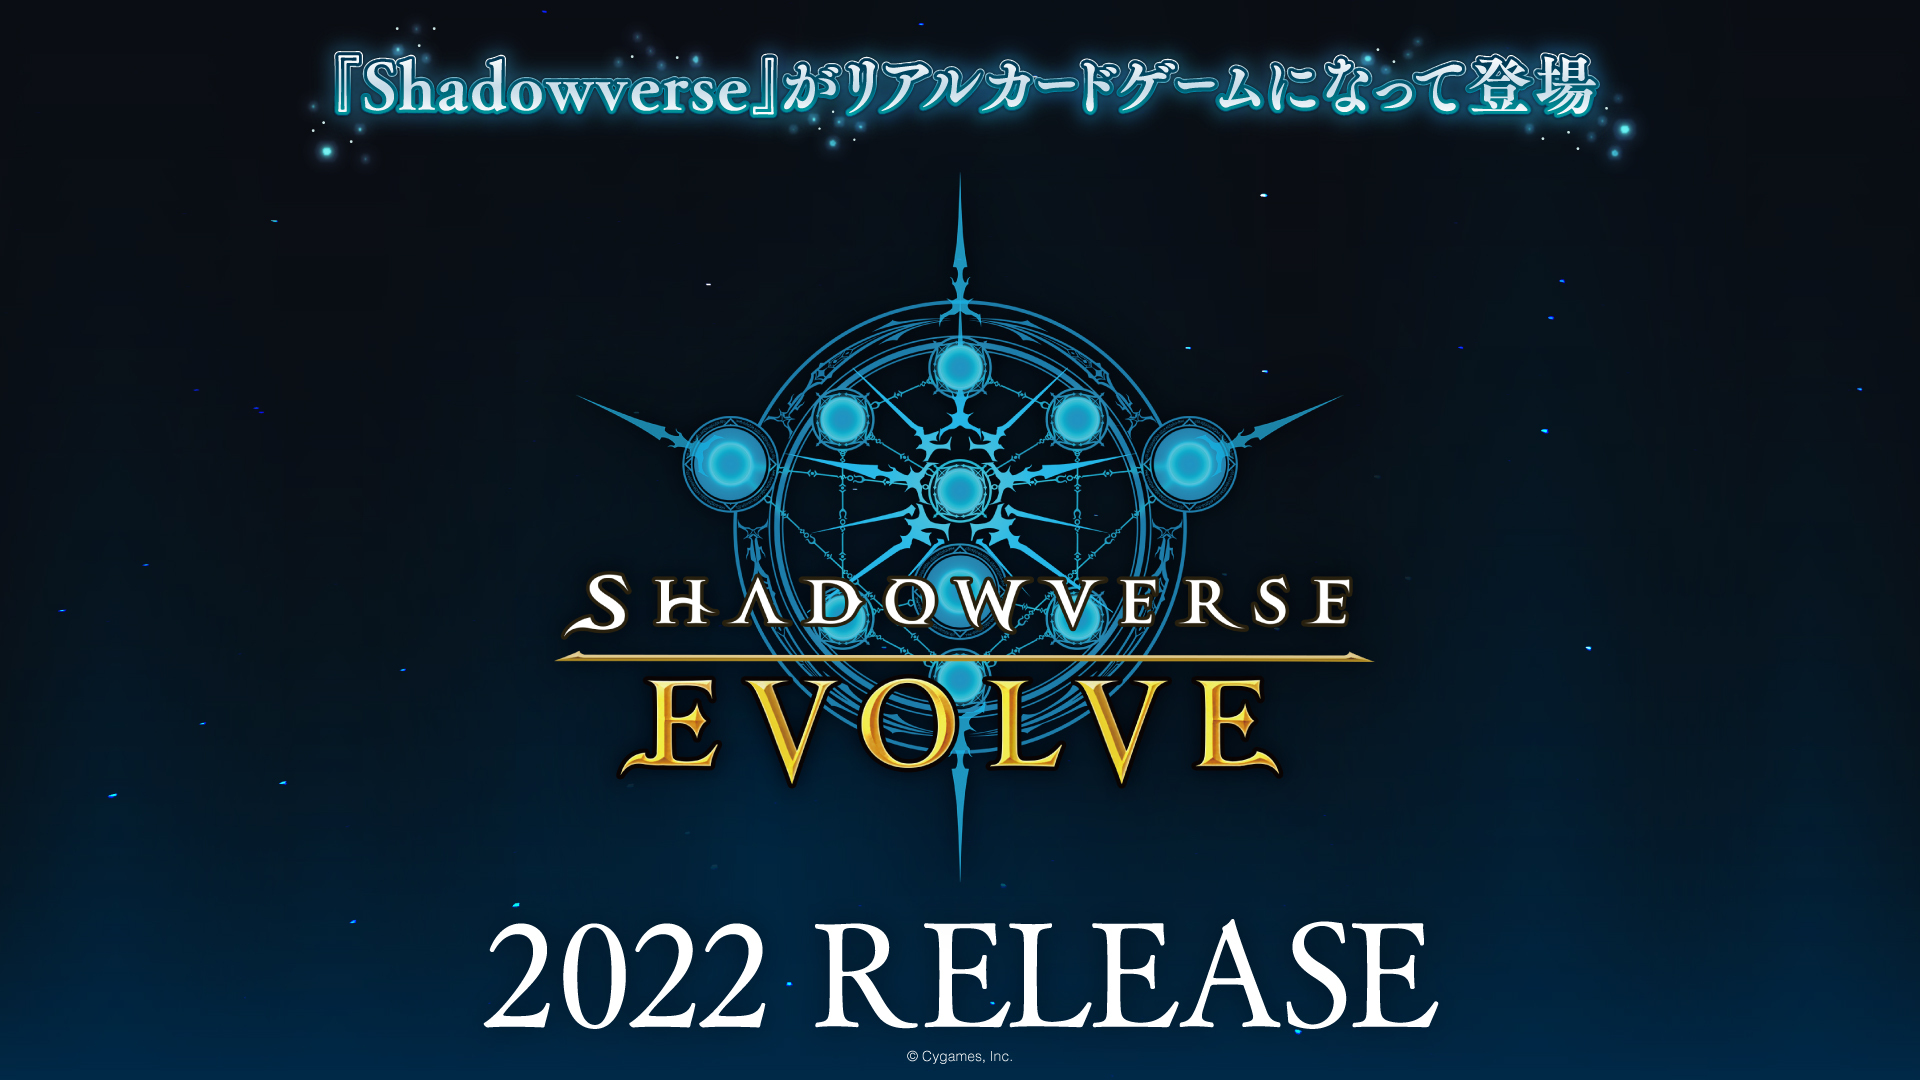 Shadowverse がついにリアルカードゲームになって登場 Shadowverse Evolve シャドウバース エボルヴ 22年発売決定 株式会社ブシロードのプレスリリース